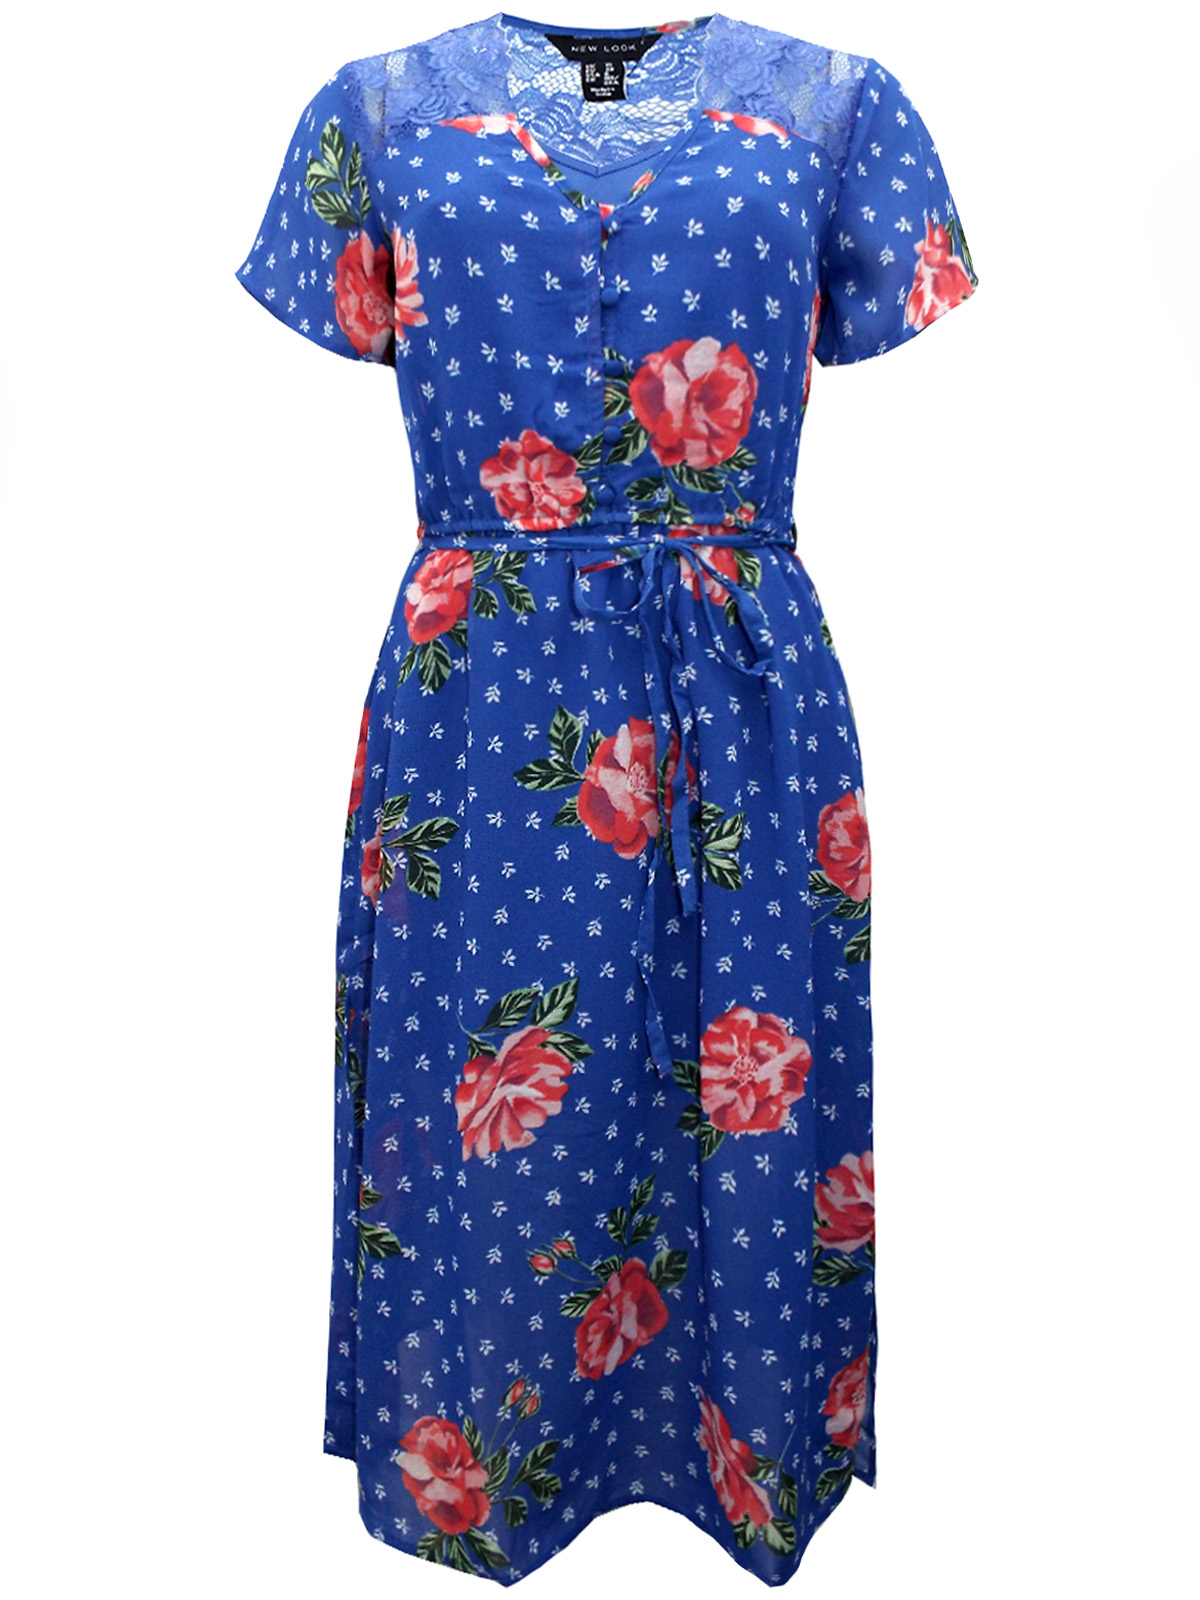 N3W L00K BLUE Lace Yoke Floral Print Midi Dress - Size 6 to 18